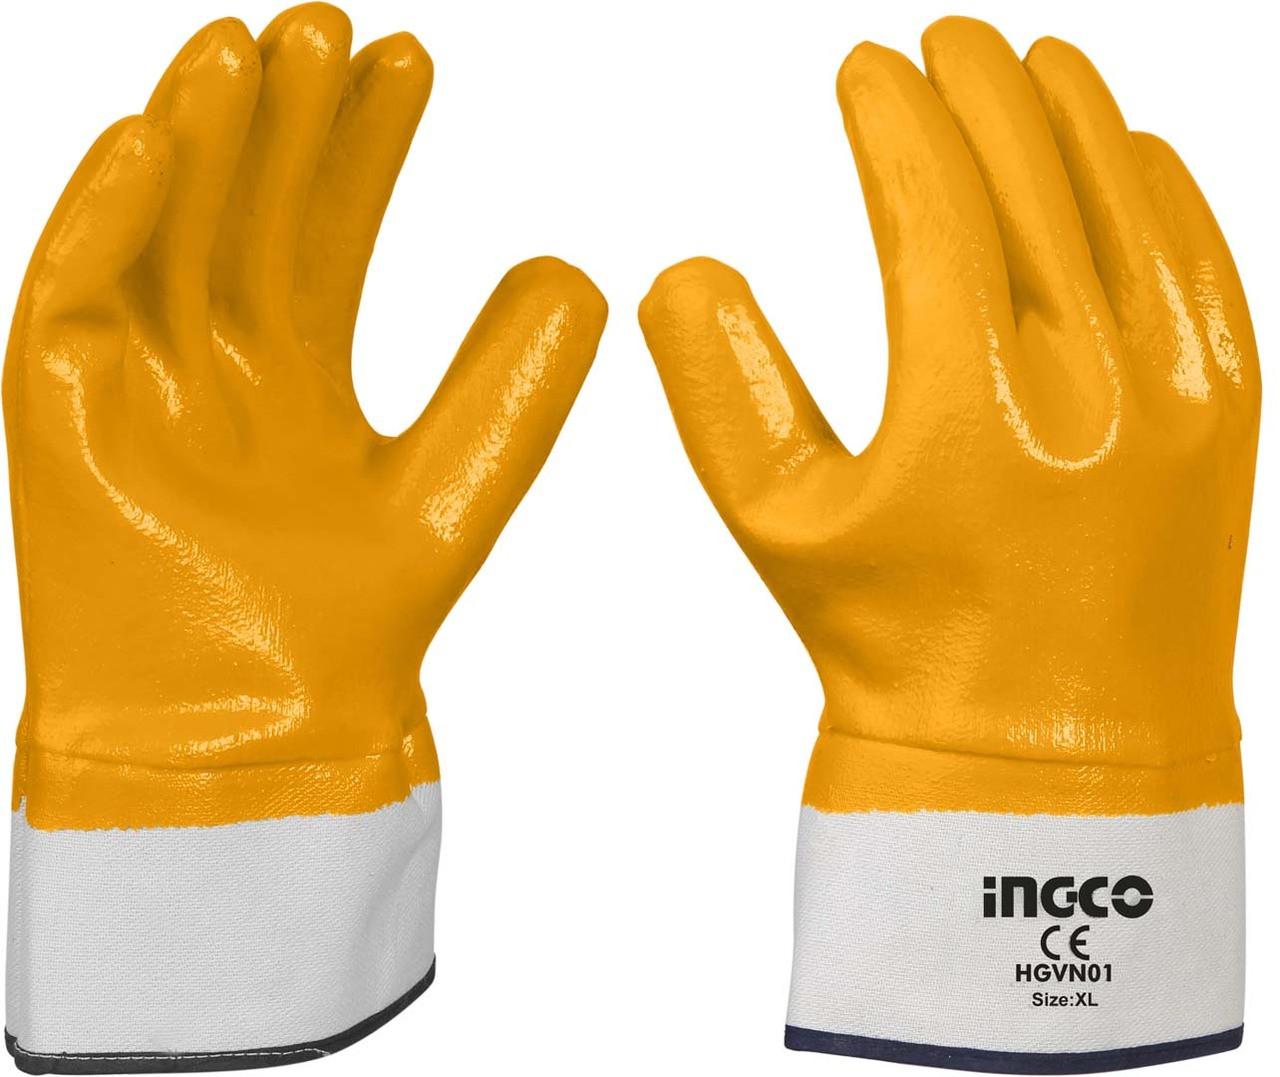 Selected image for INGCO HGVN01 Nitrile rukavice, Narandžaste